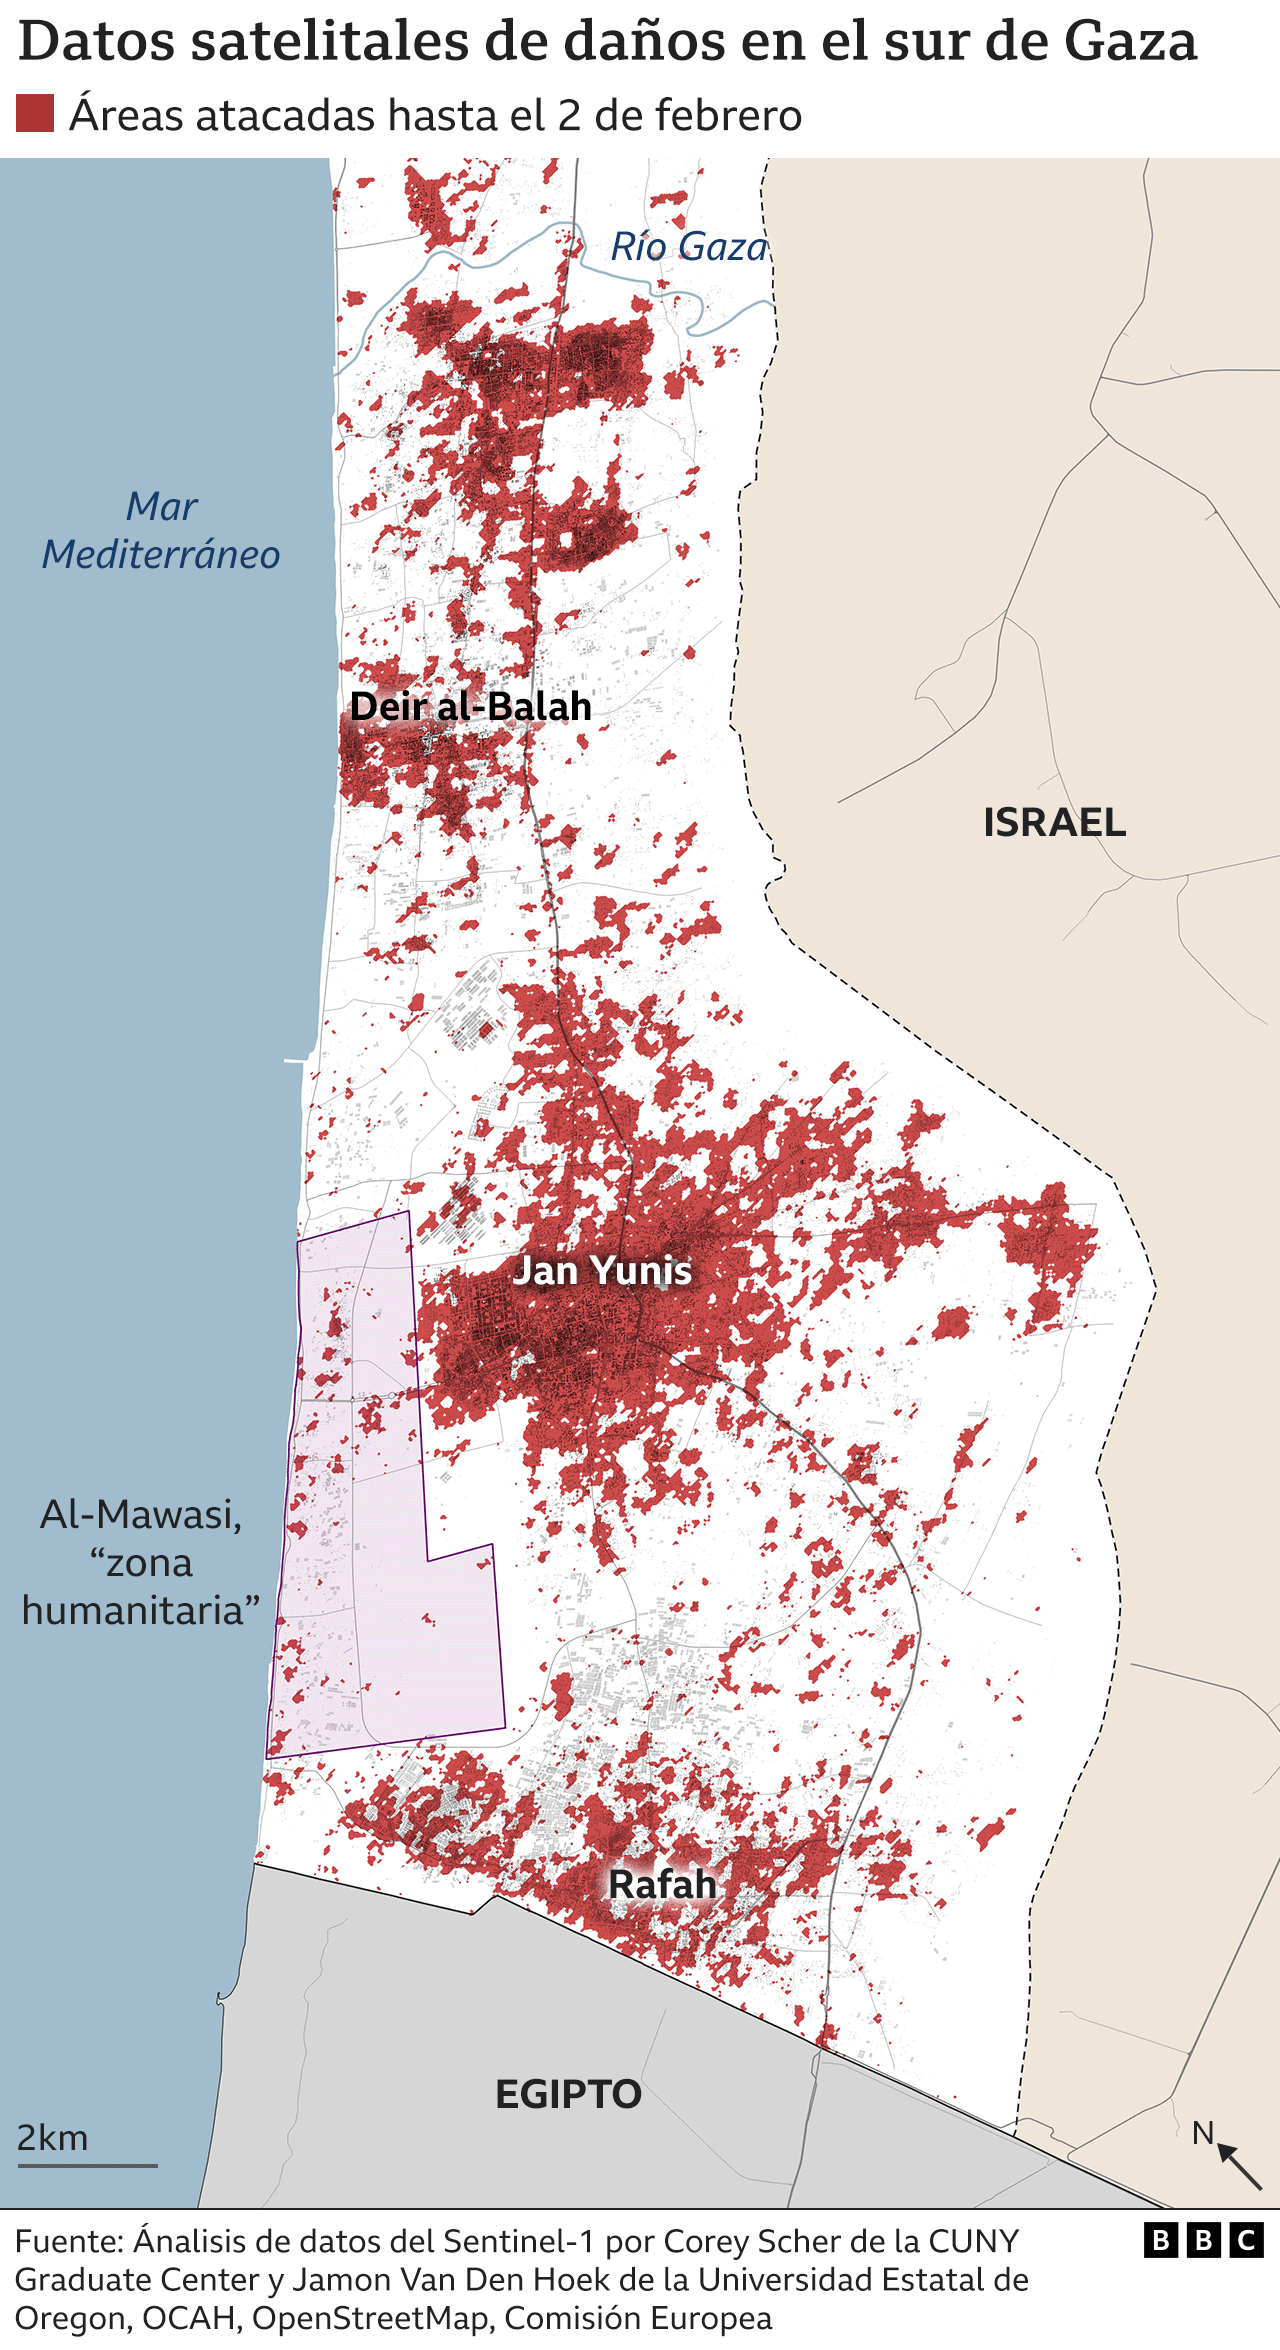 Daños en el sur de Gaza